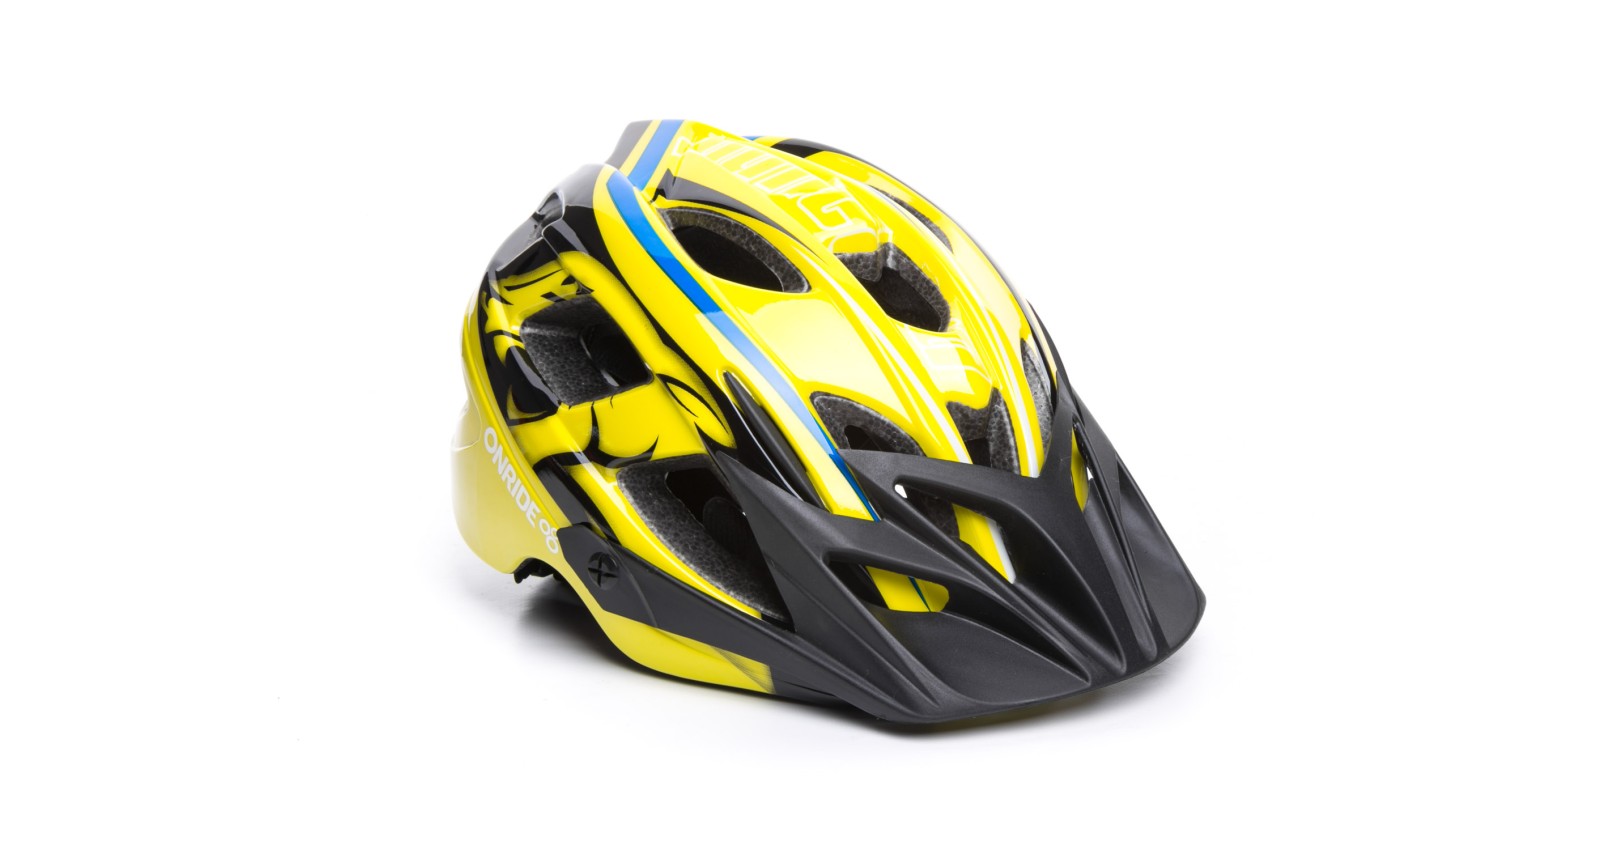 Шлем OnRide Rider глянцевый, желтый/голубой M (52-56 см)